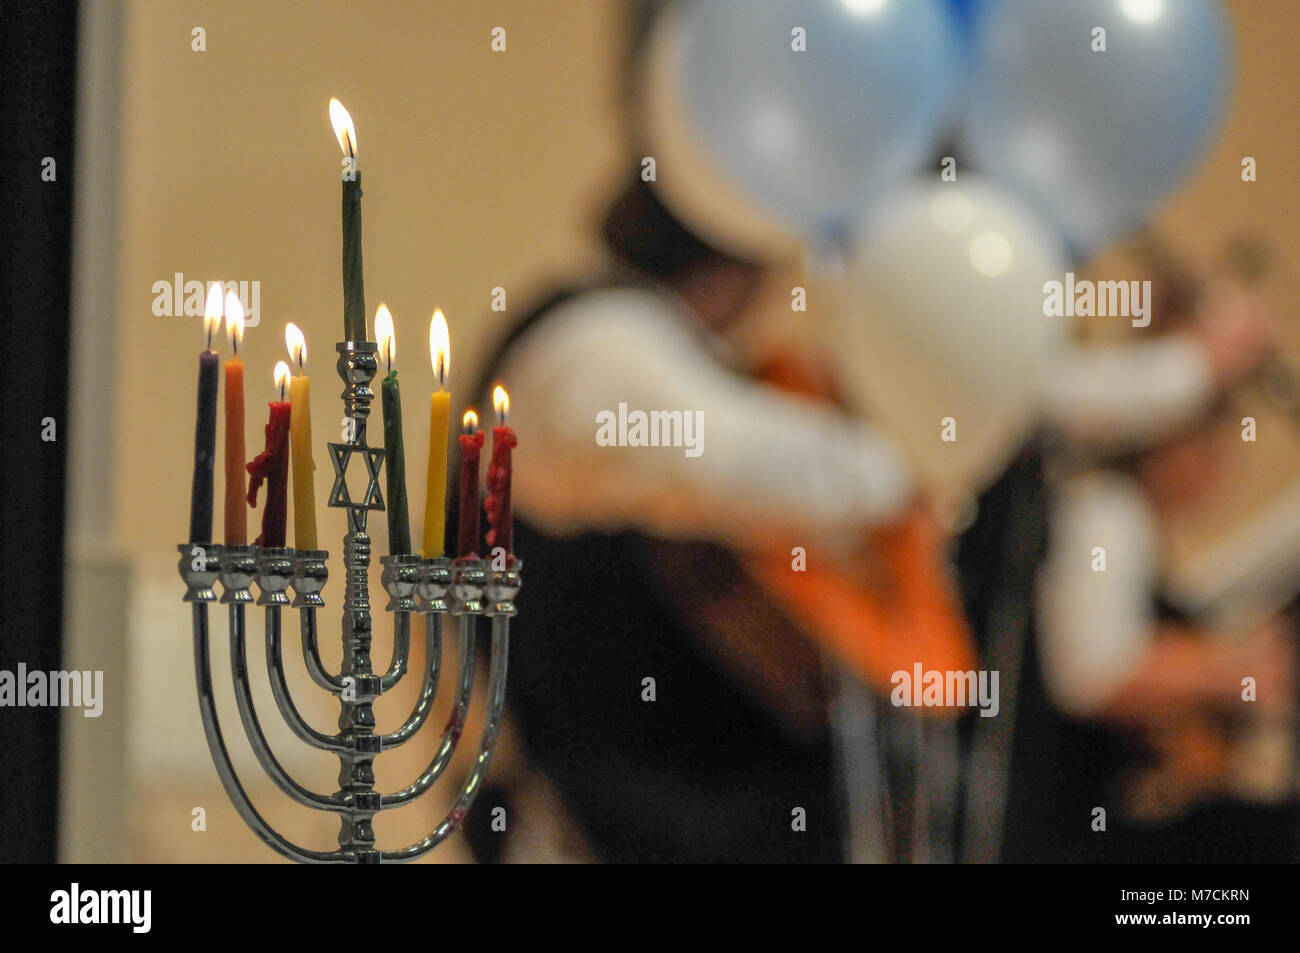 Une Menorah avec huit bougies brûle à une Juive de concert. Bougies en premier plan et la bande juive dans l'arrière-plan flou. Banque D'Images